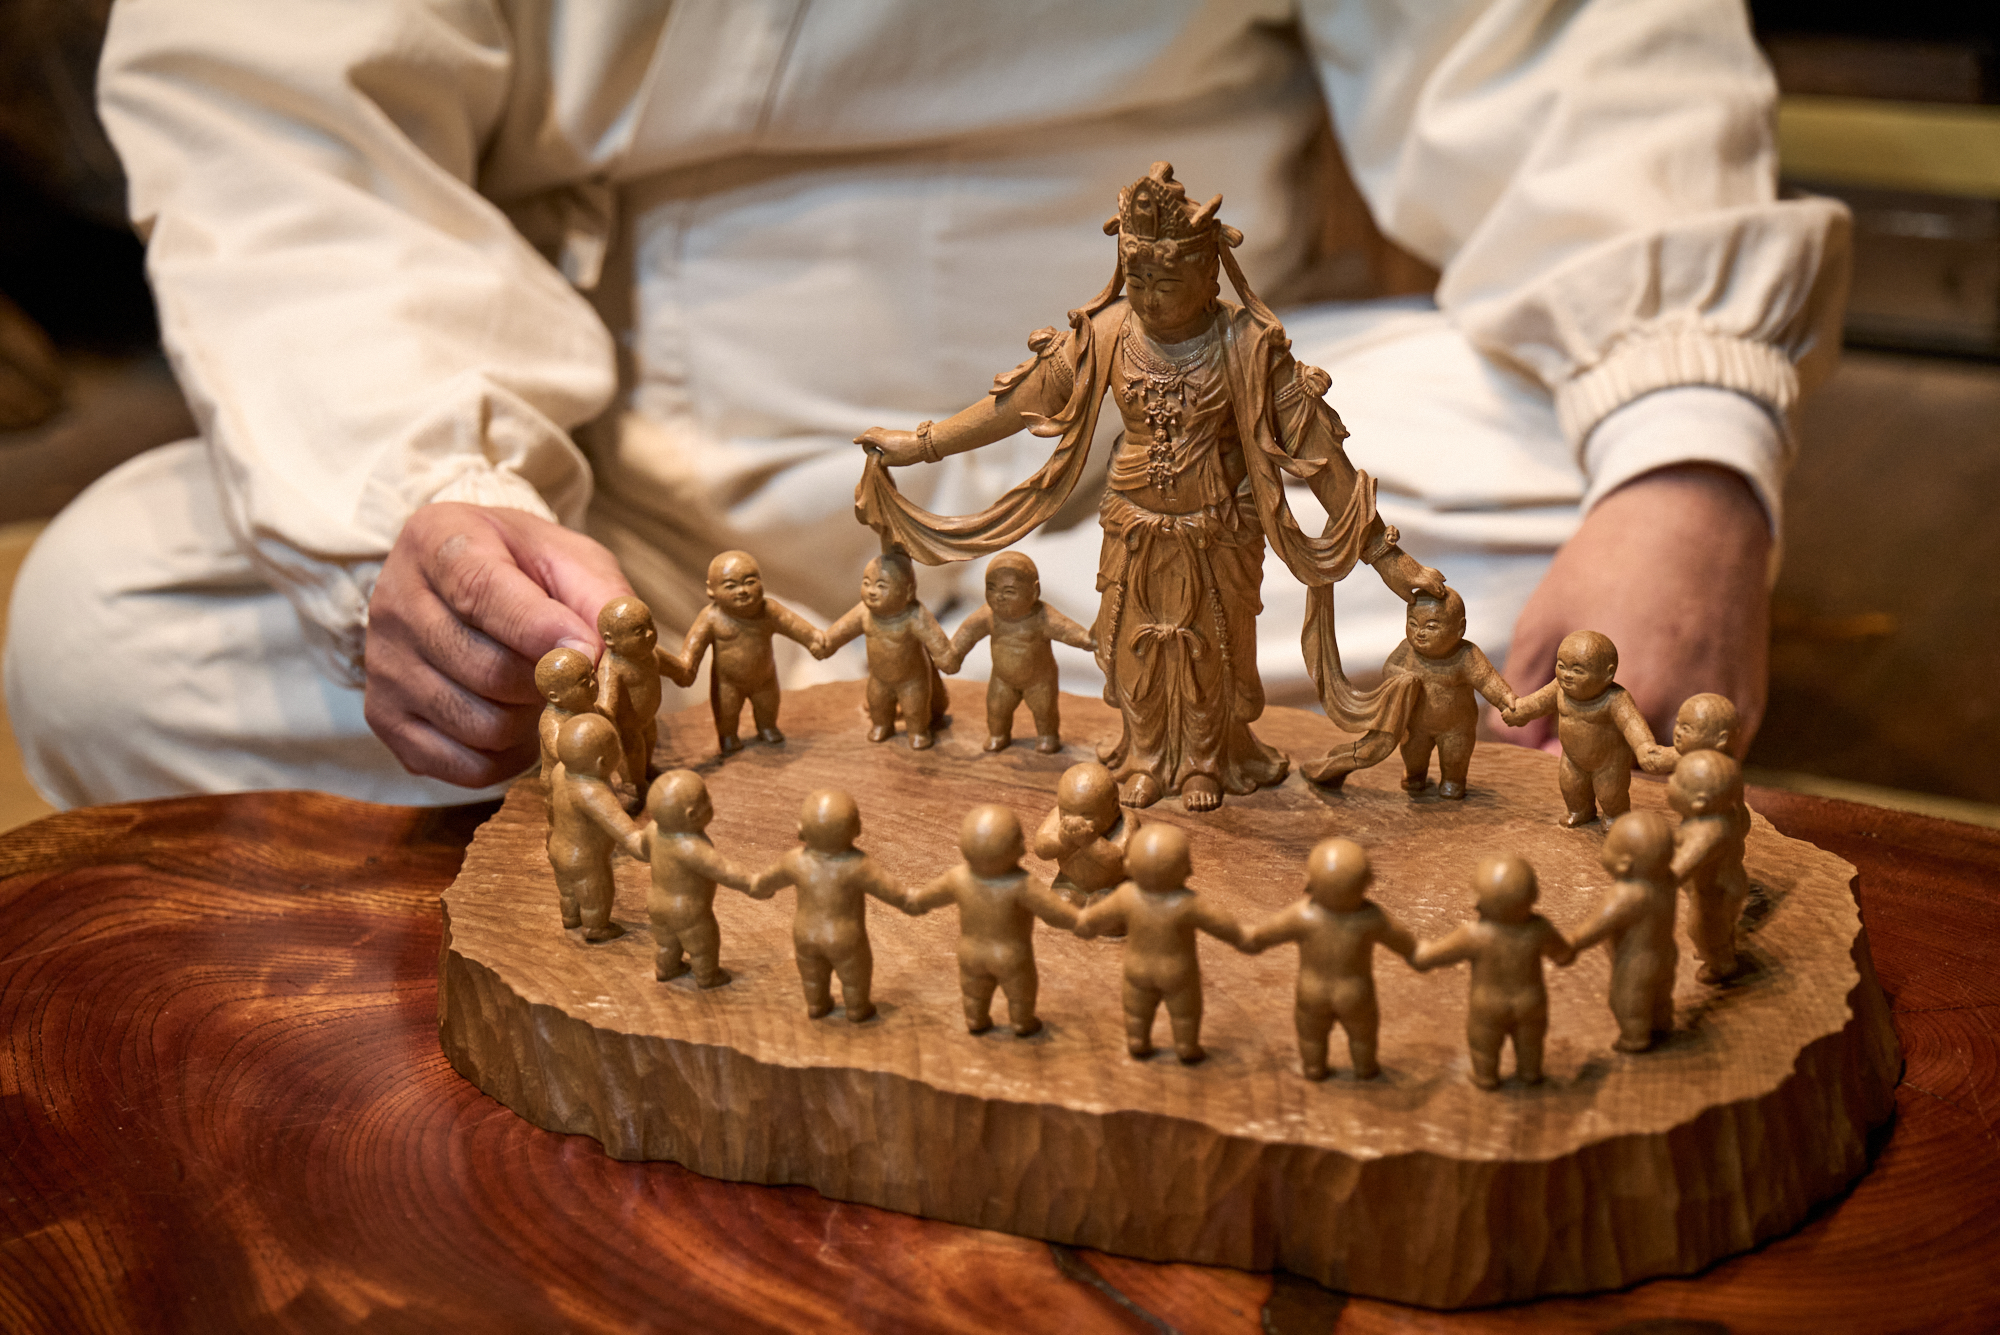 観音菩薩や童子、土台が1本の木から彫り起こされている一木造の作品。ノミや小刀だけでつくられたと思えない高度な技術が詰まっています。